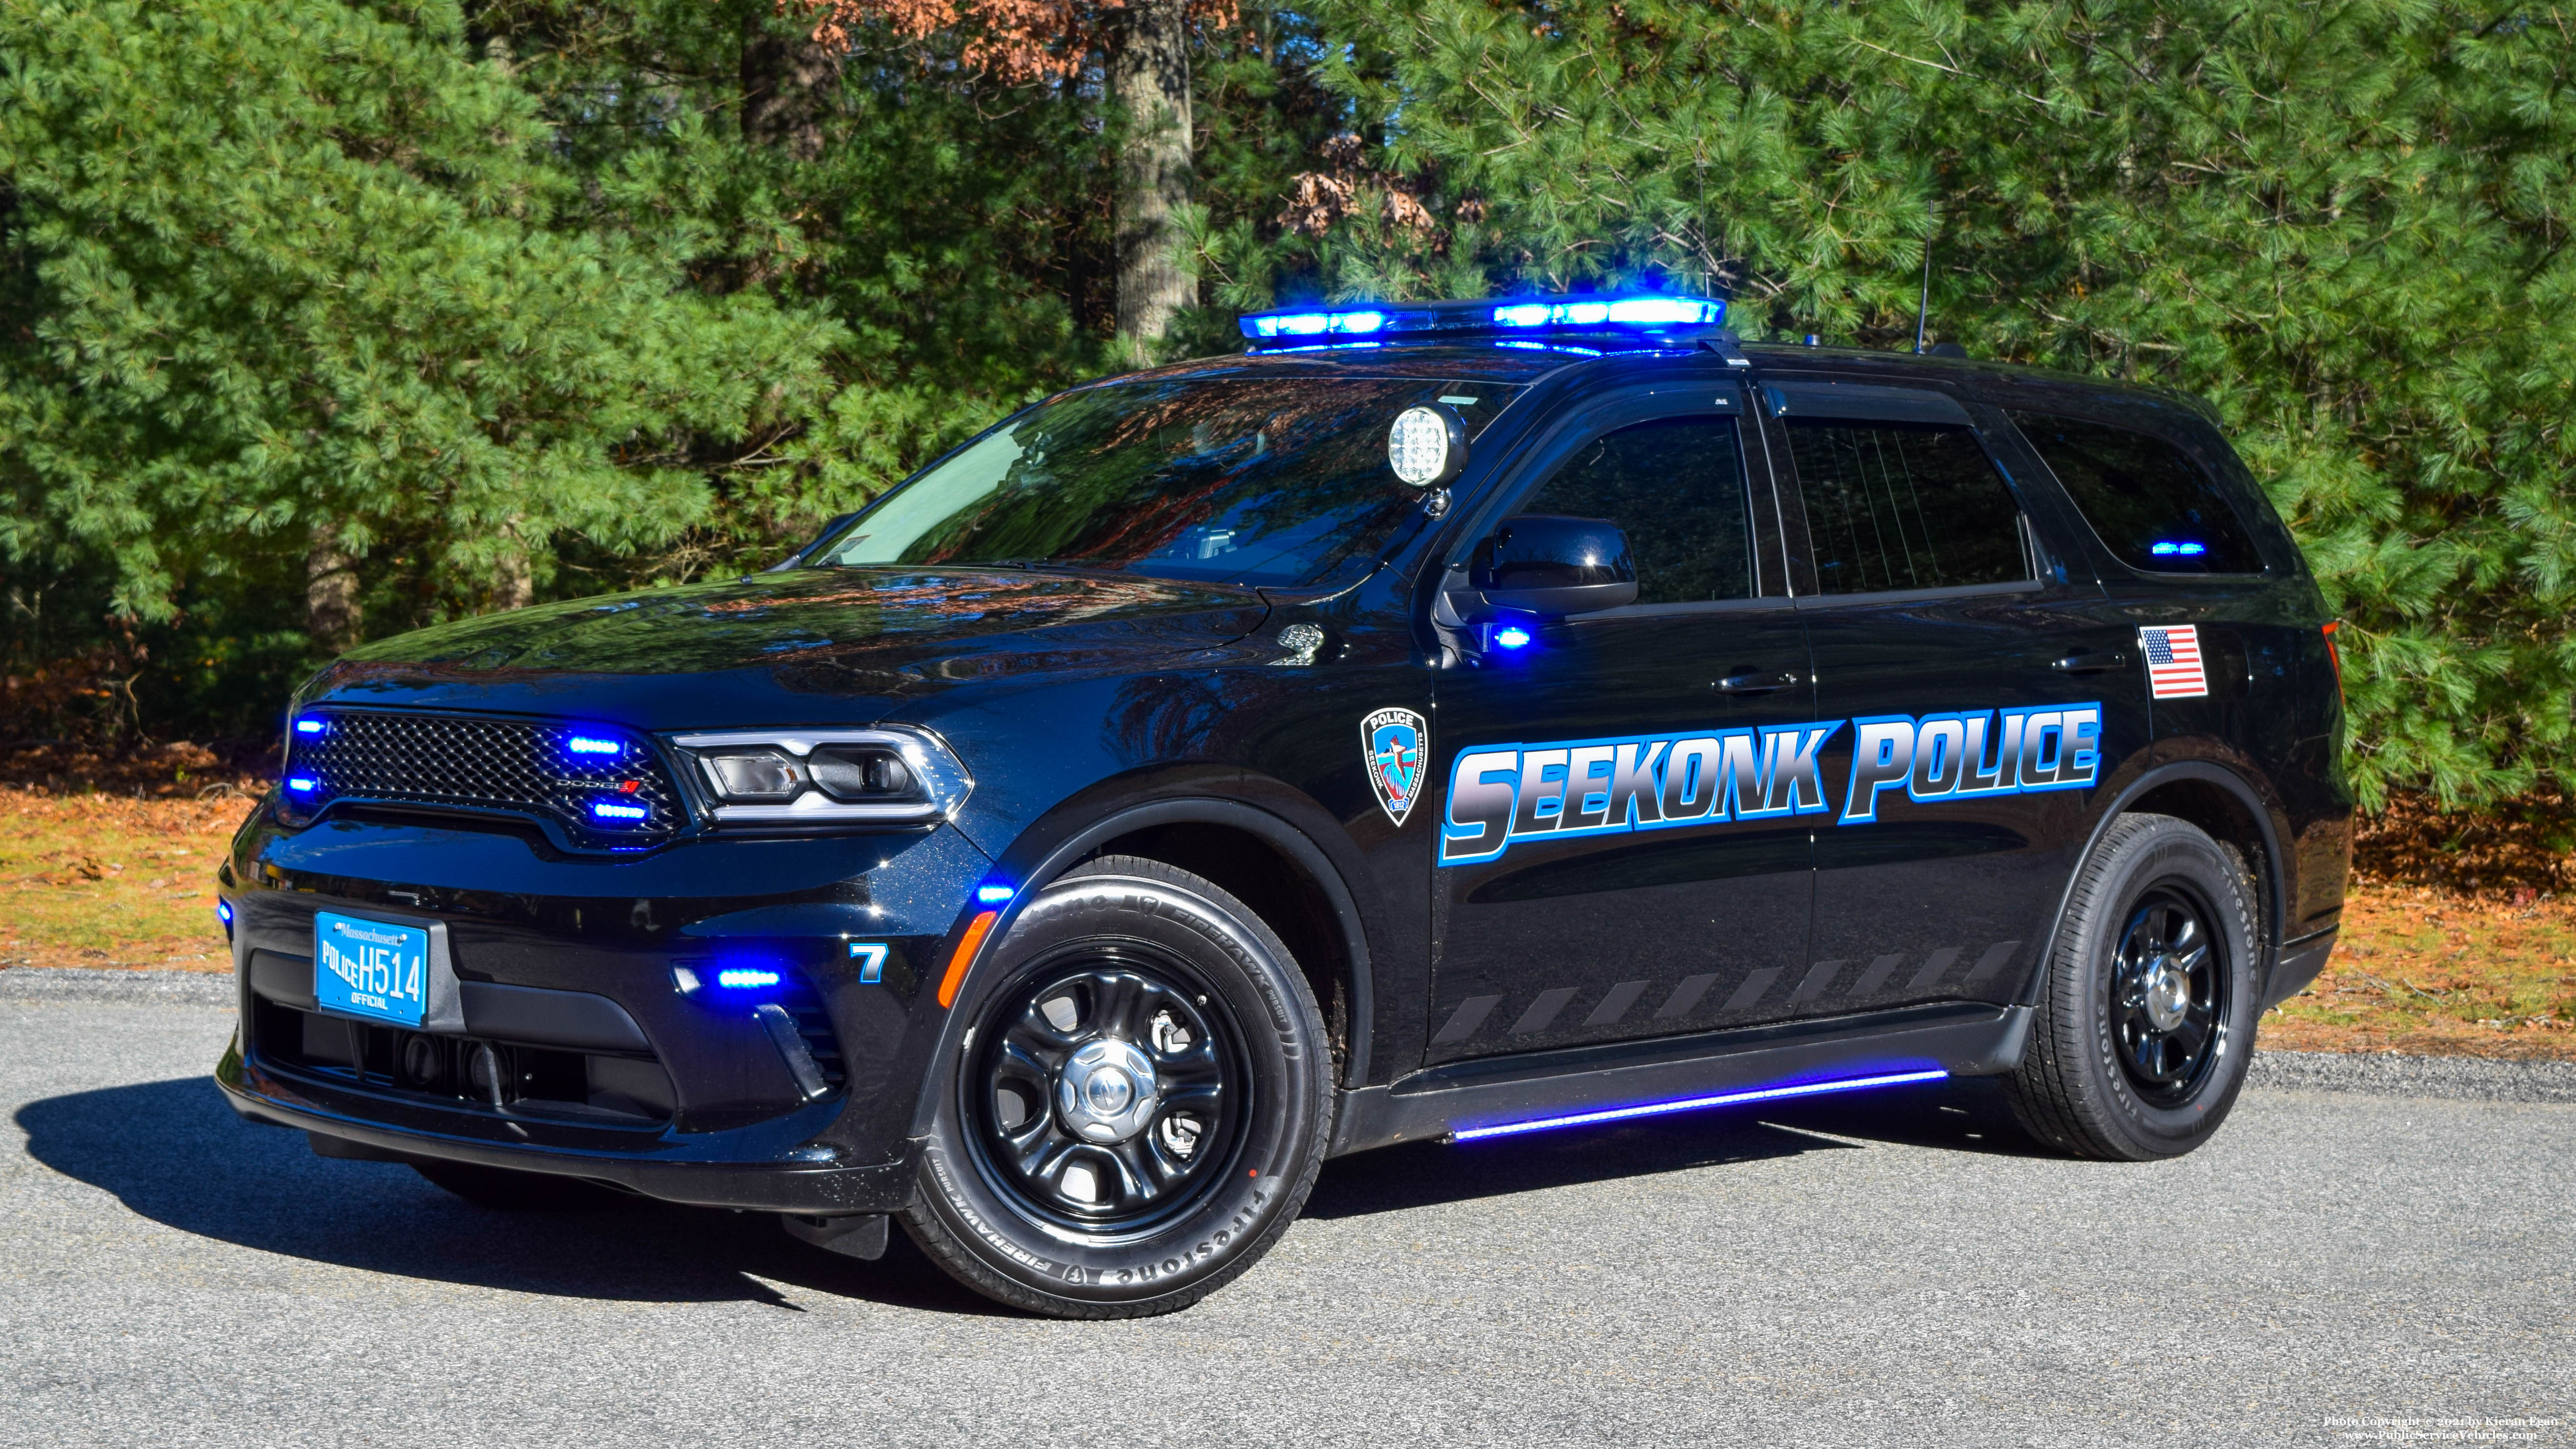 A photo  of Seekonk Police
            Car 7, a 2021 Dodge Durango             taken by Kieran Egan